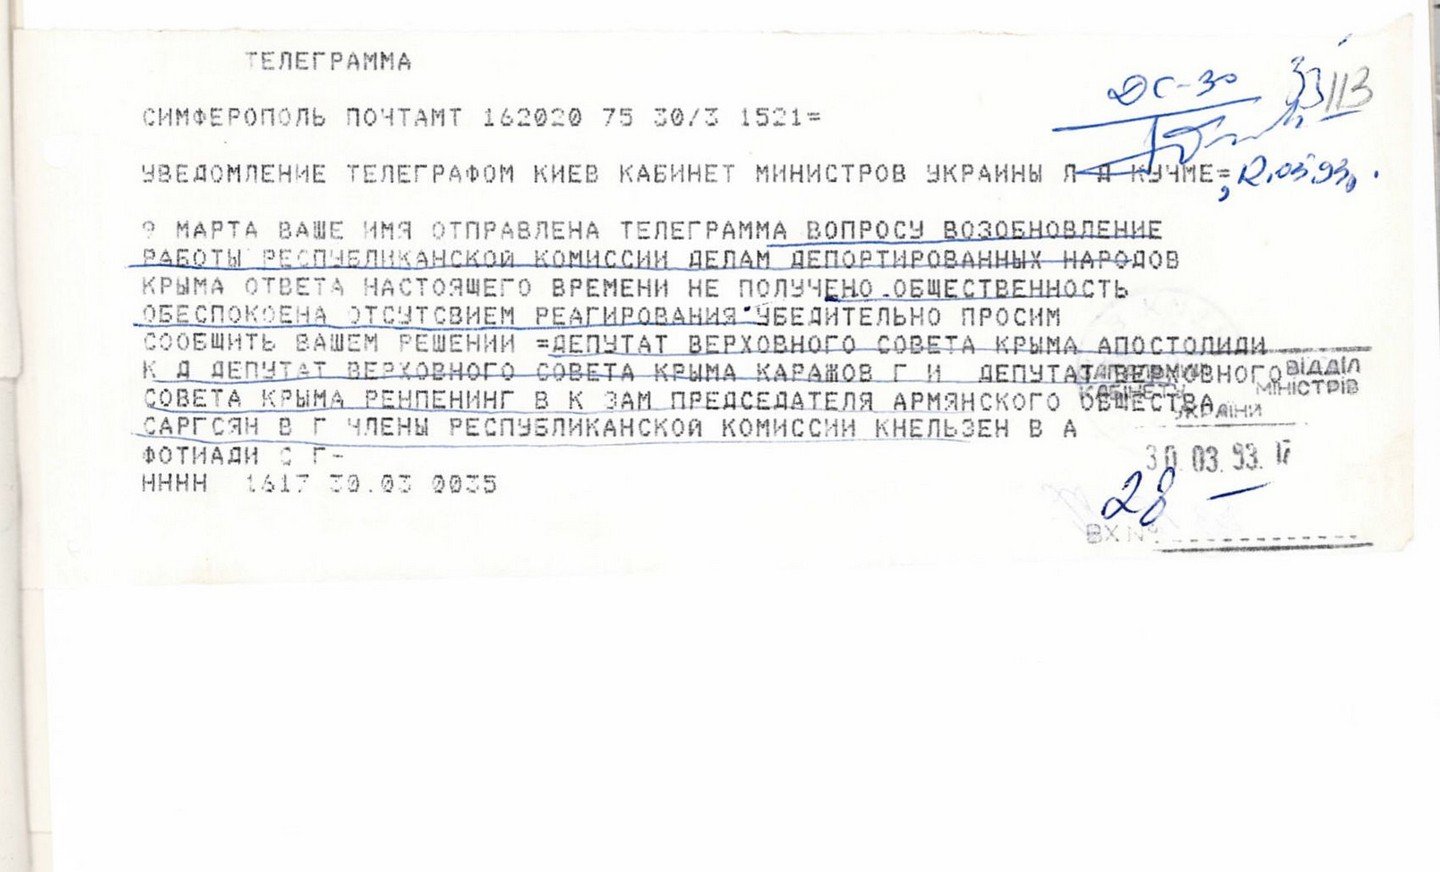 Телеграфні звернення, в яких ставляться питання щодо поліпшення роботи Уряду по облаштуванню депортованих народів в Криму. 1- 8 квітня 1993 р.